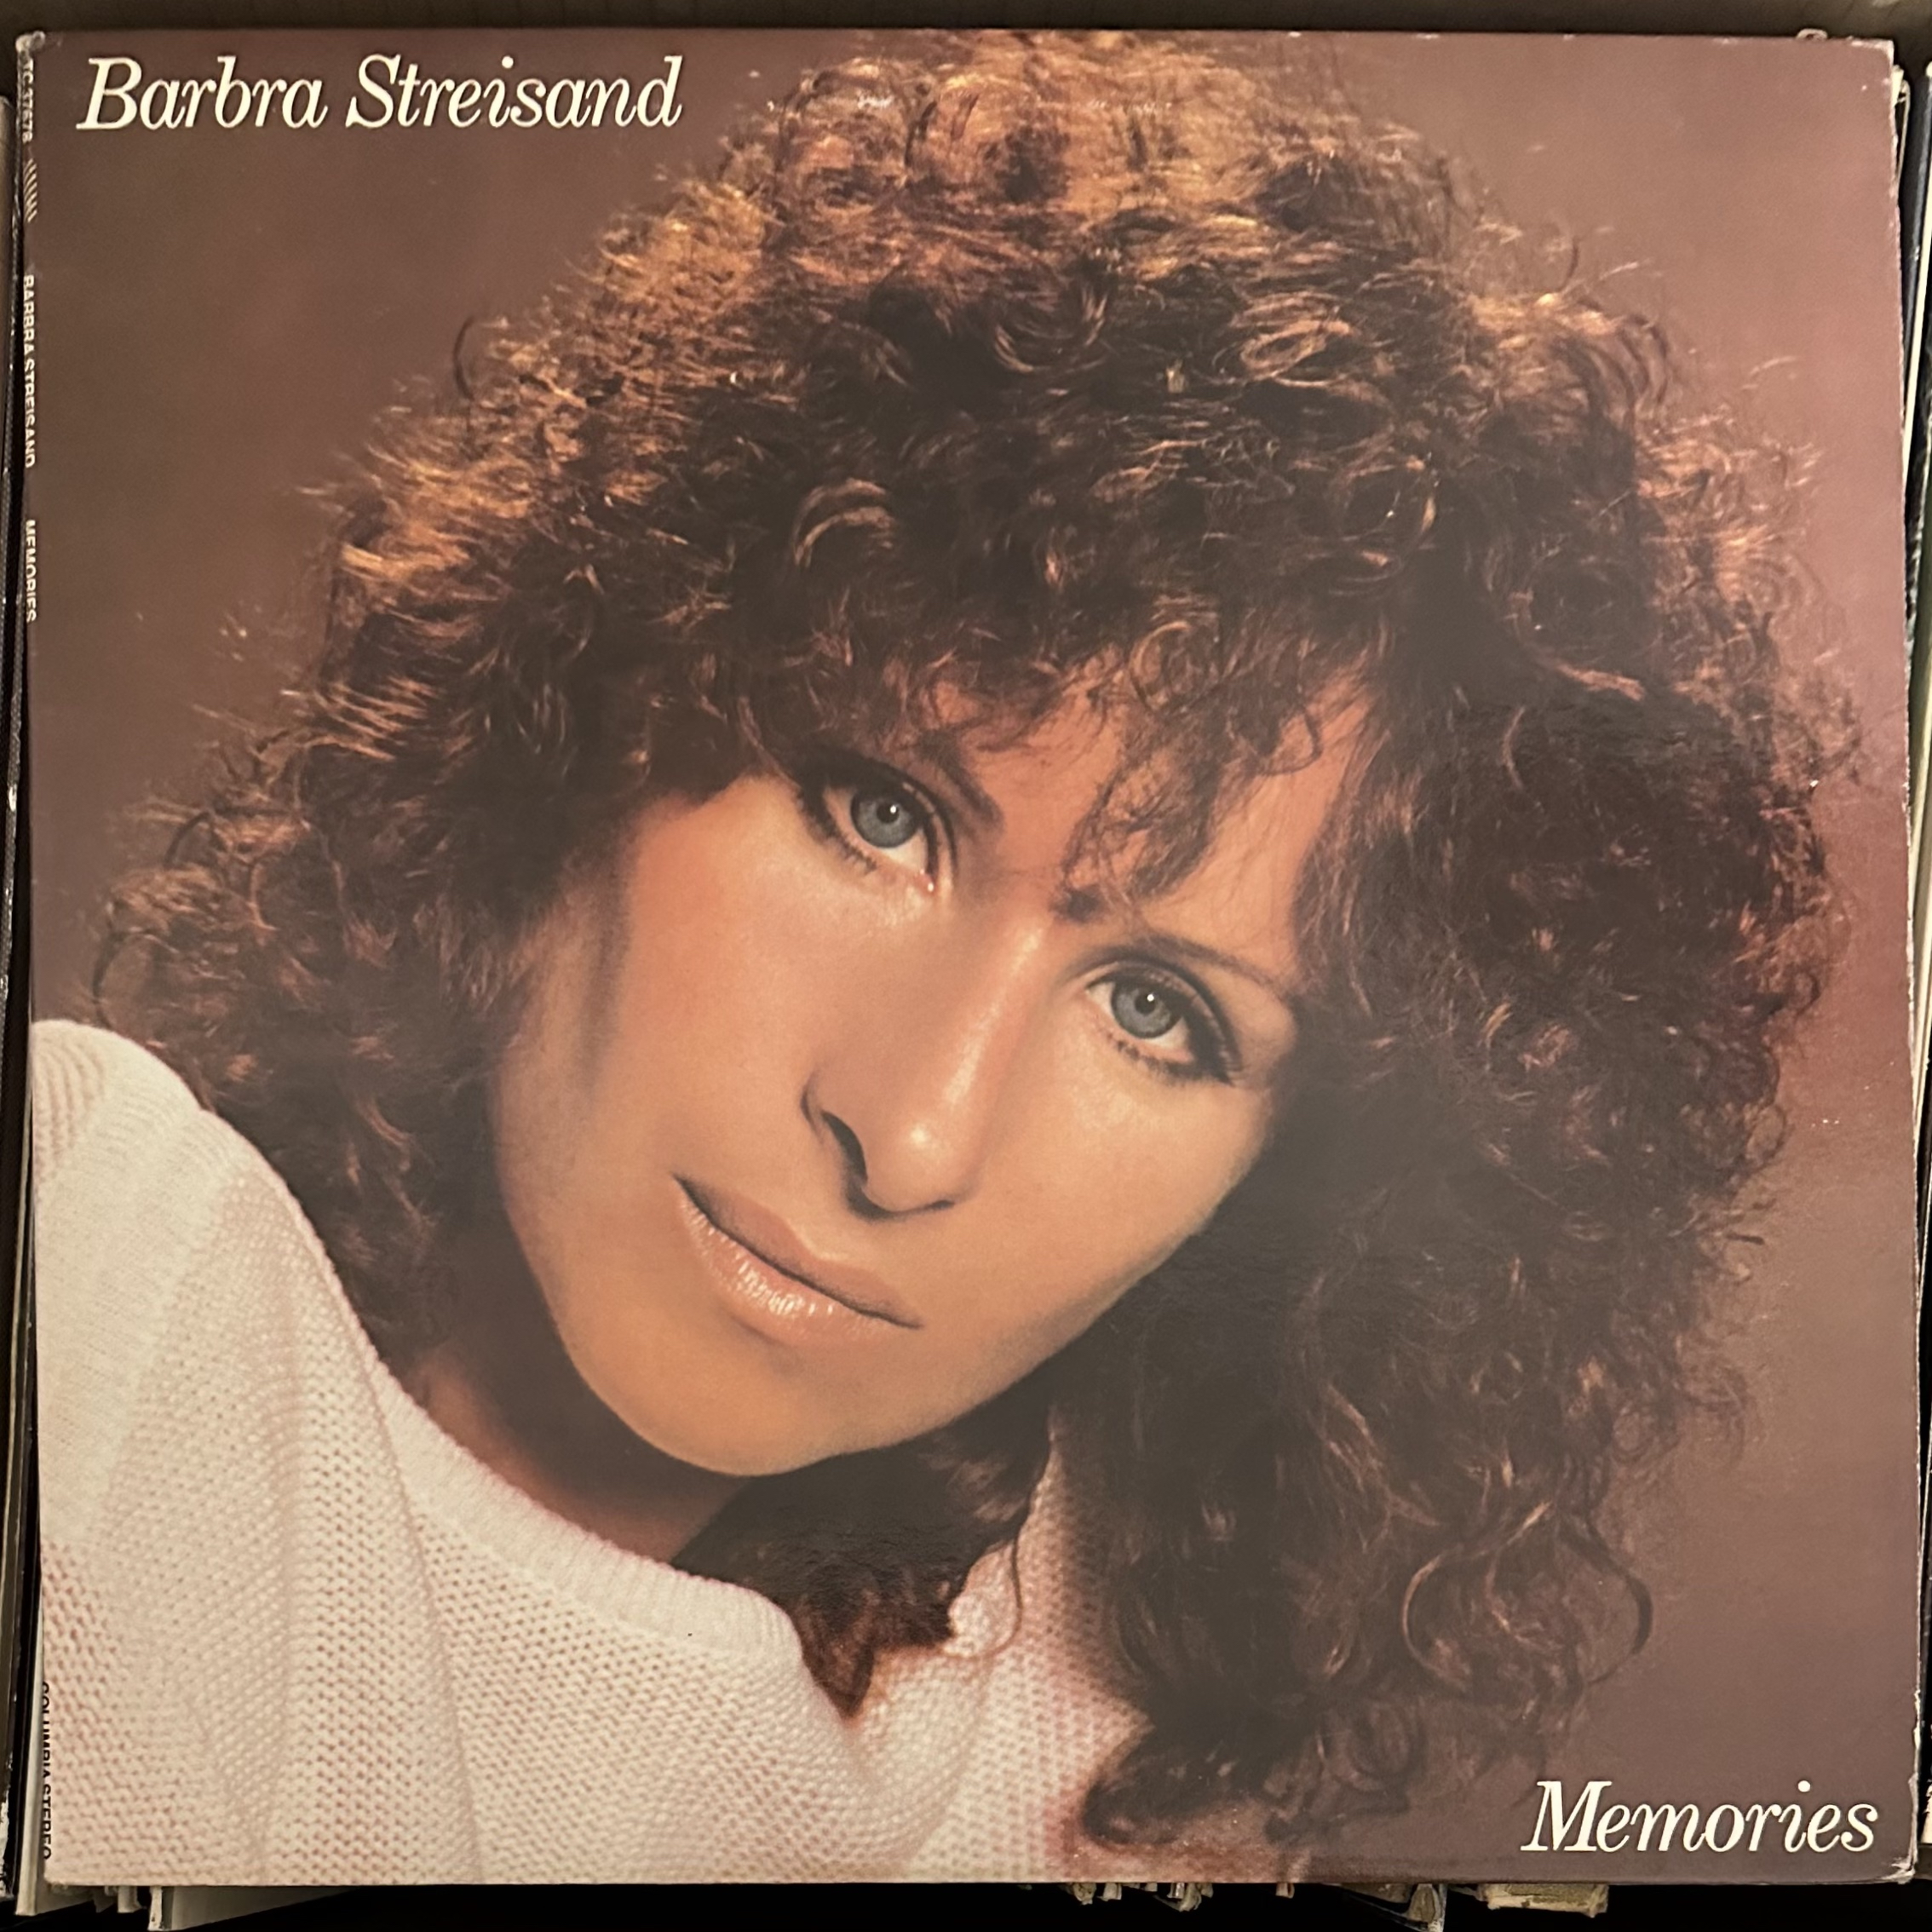 Memories by Barbra Streisand